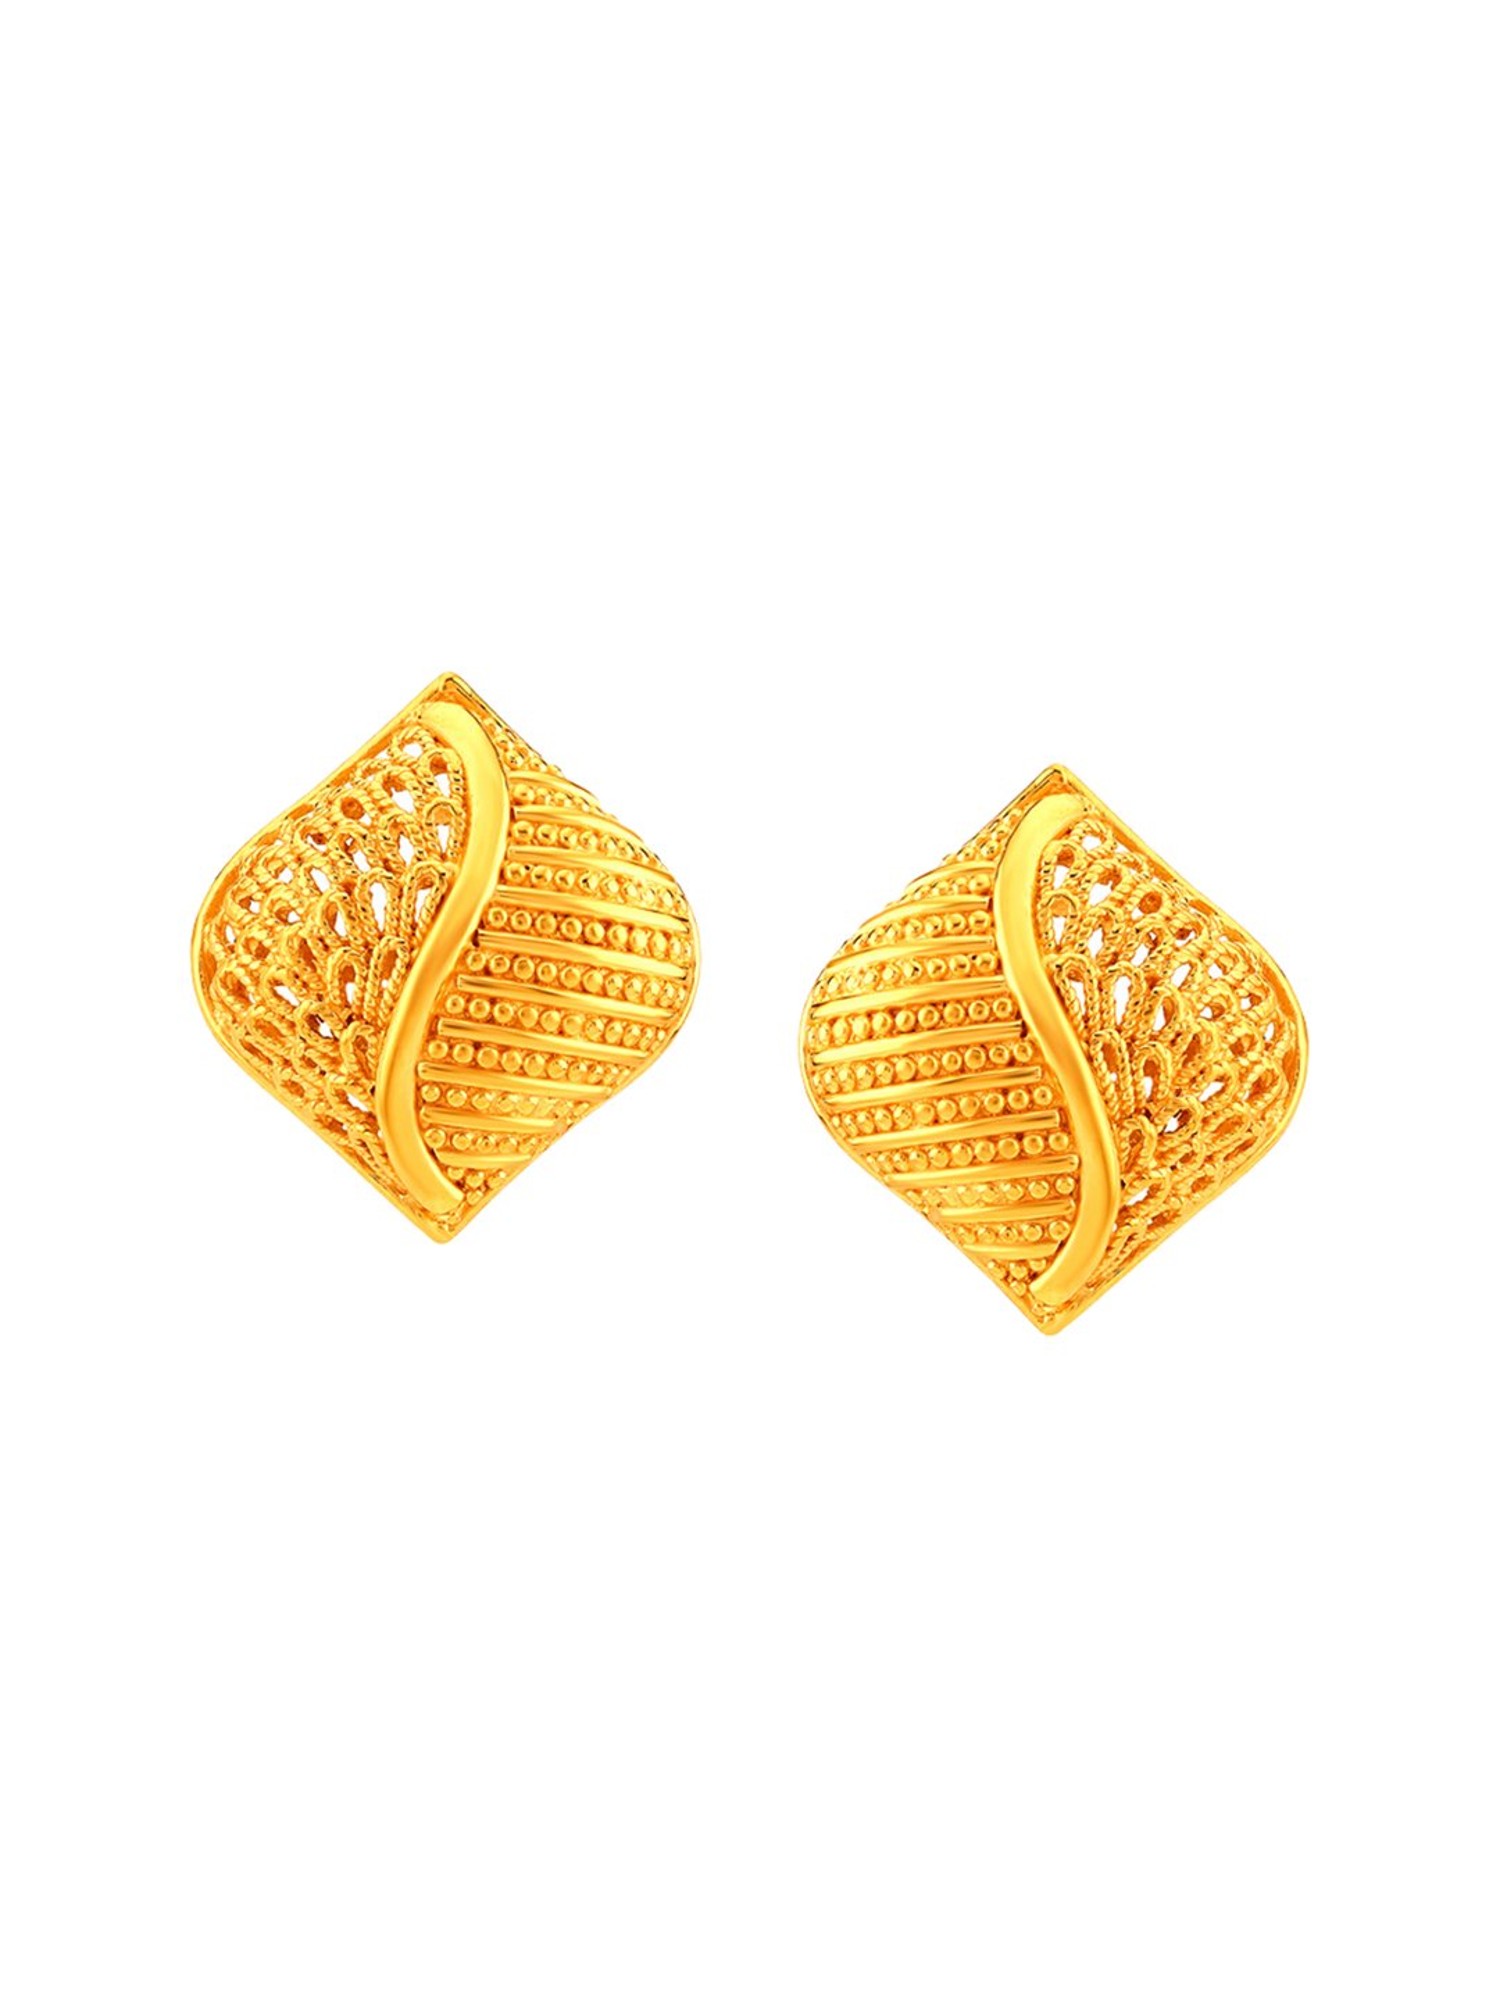 Mia by Tanishq 14KT Yellow Gold Drop Earrings for Women : Amazon.in: Fashion-hoanganhbinhduong.edu.vn